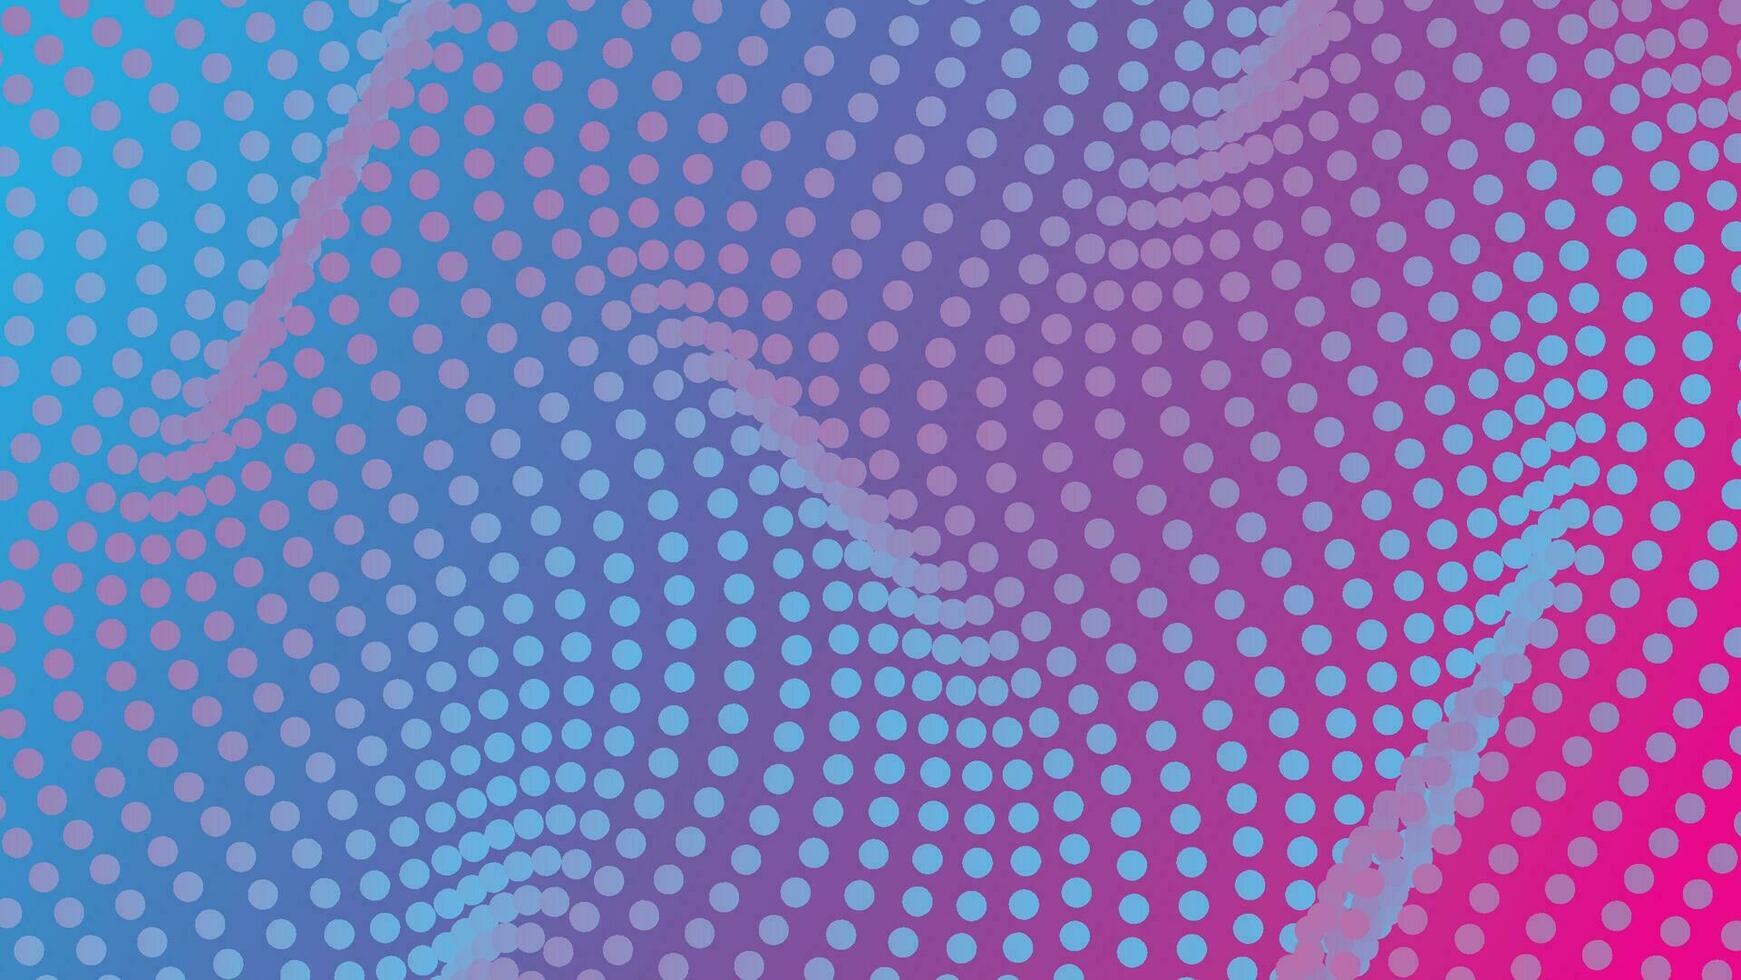 abstrakt Hintergrund mit Punkte wellig Muster auf Blau und Rosa Gradient Farbe vektor